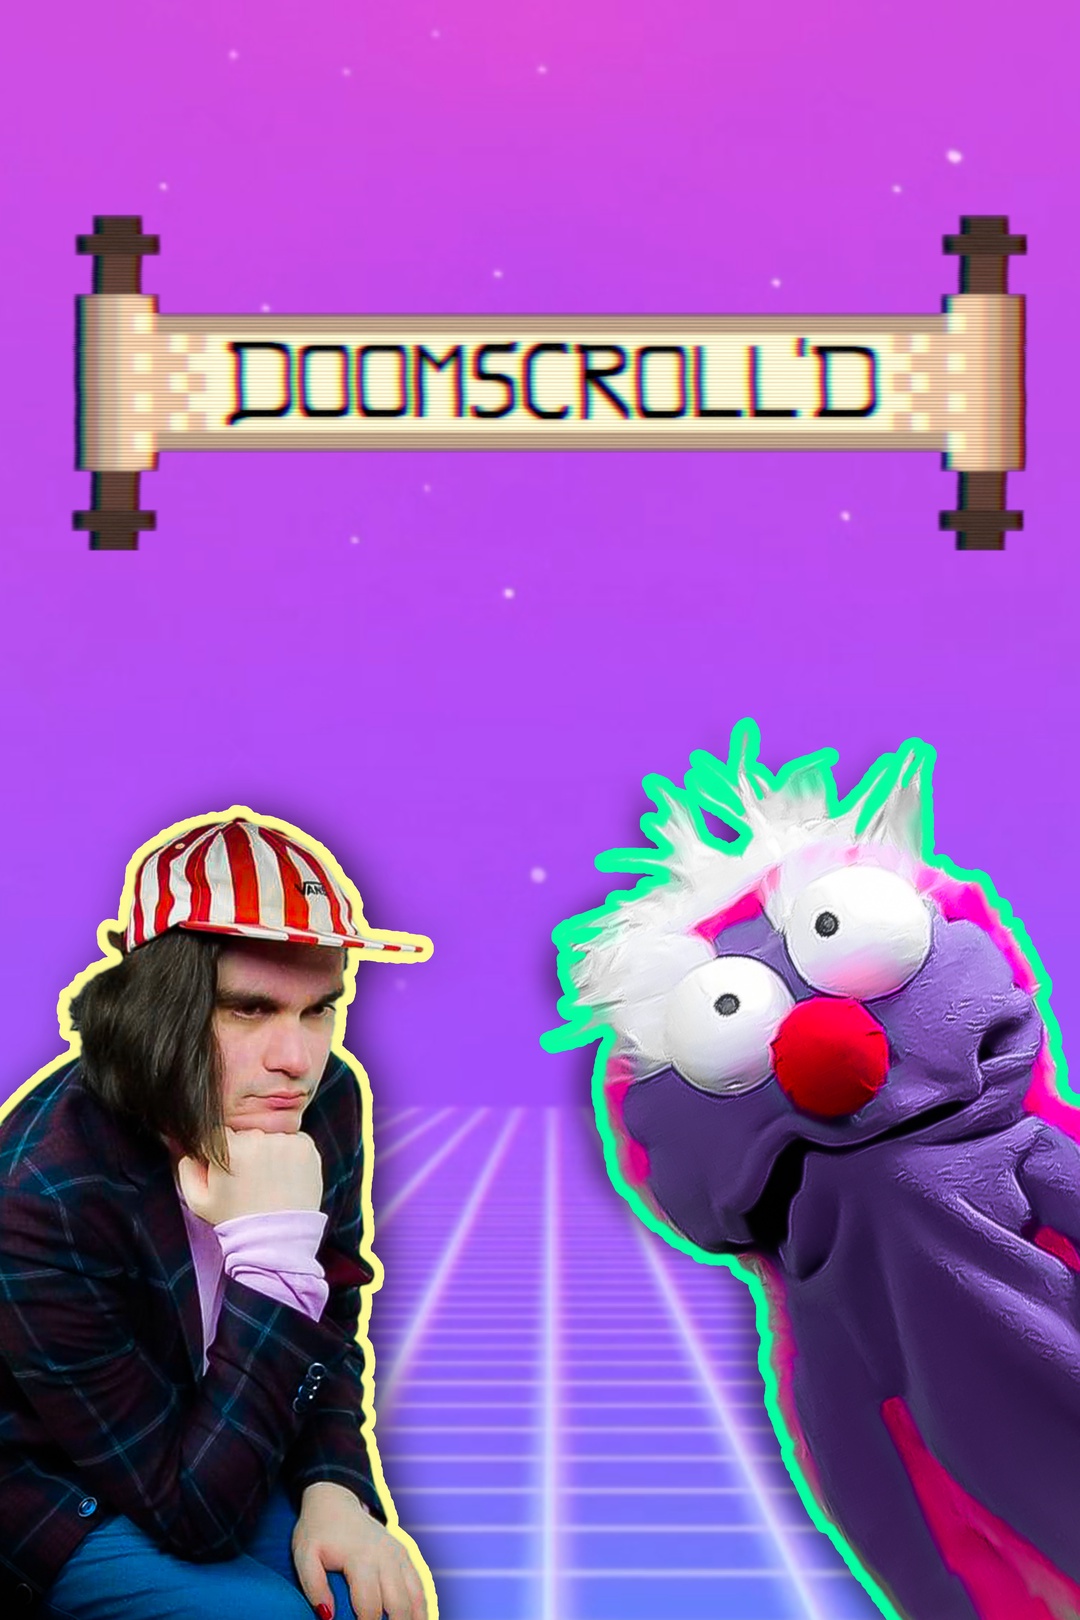 Doomscroll'd